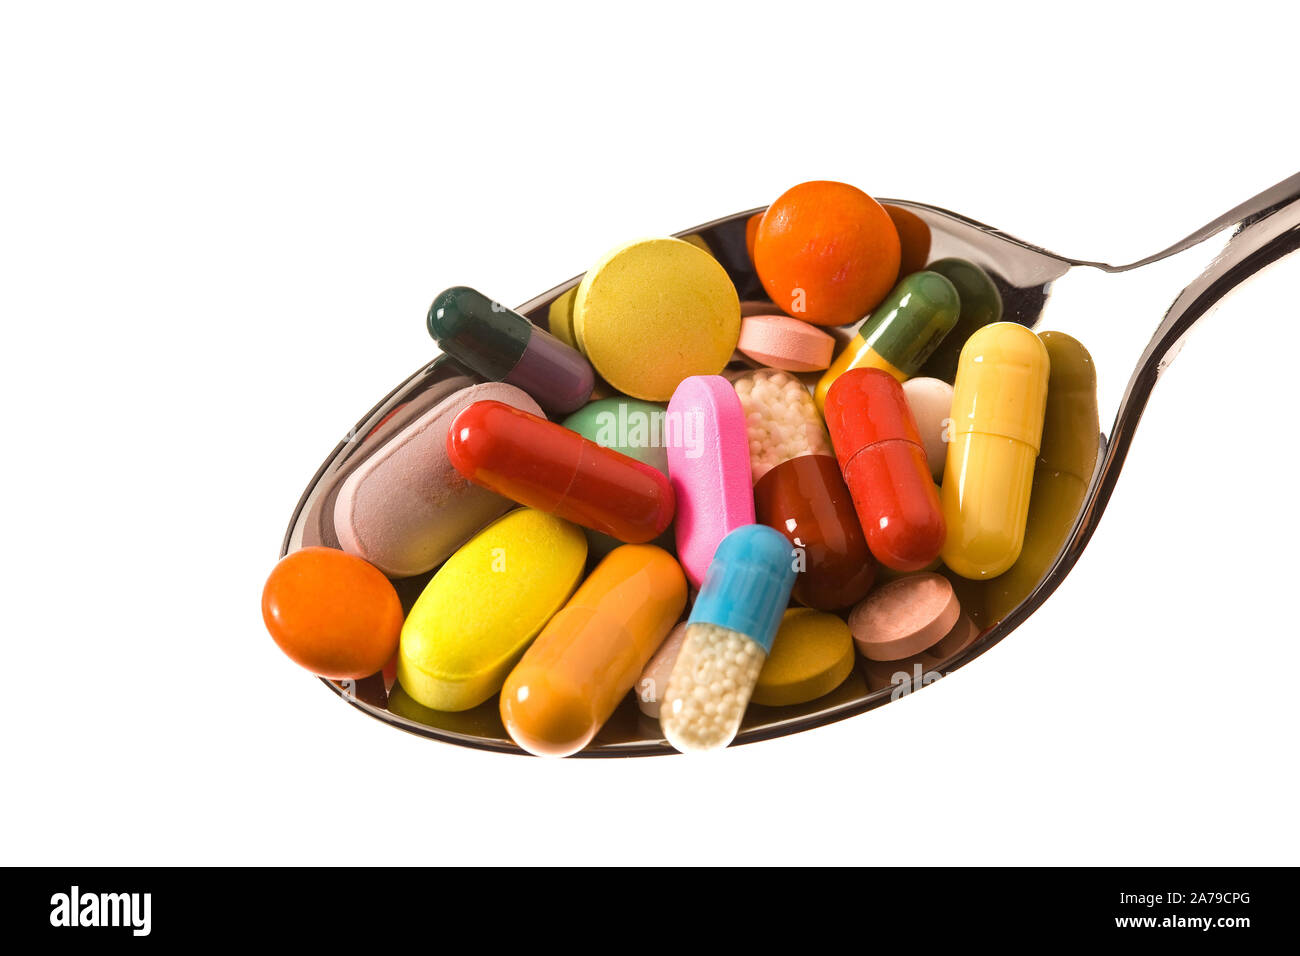 Auf einem Löffel liegen viele bunte Tabletten,  Tablettensucht, Medikamentensucht, Abhängigkeit, Stock Photo